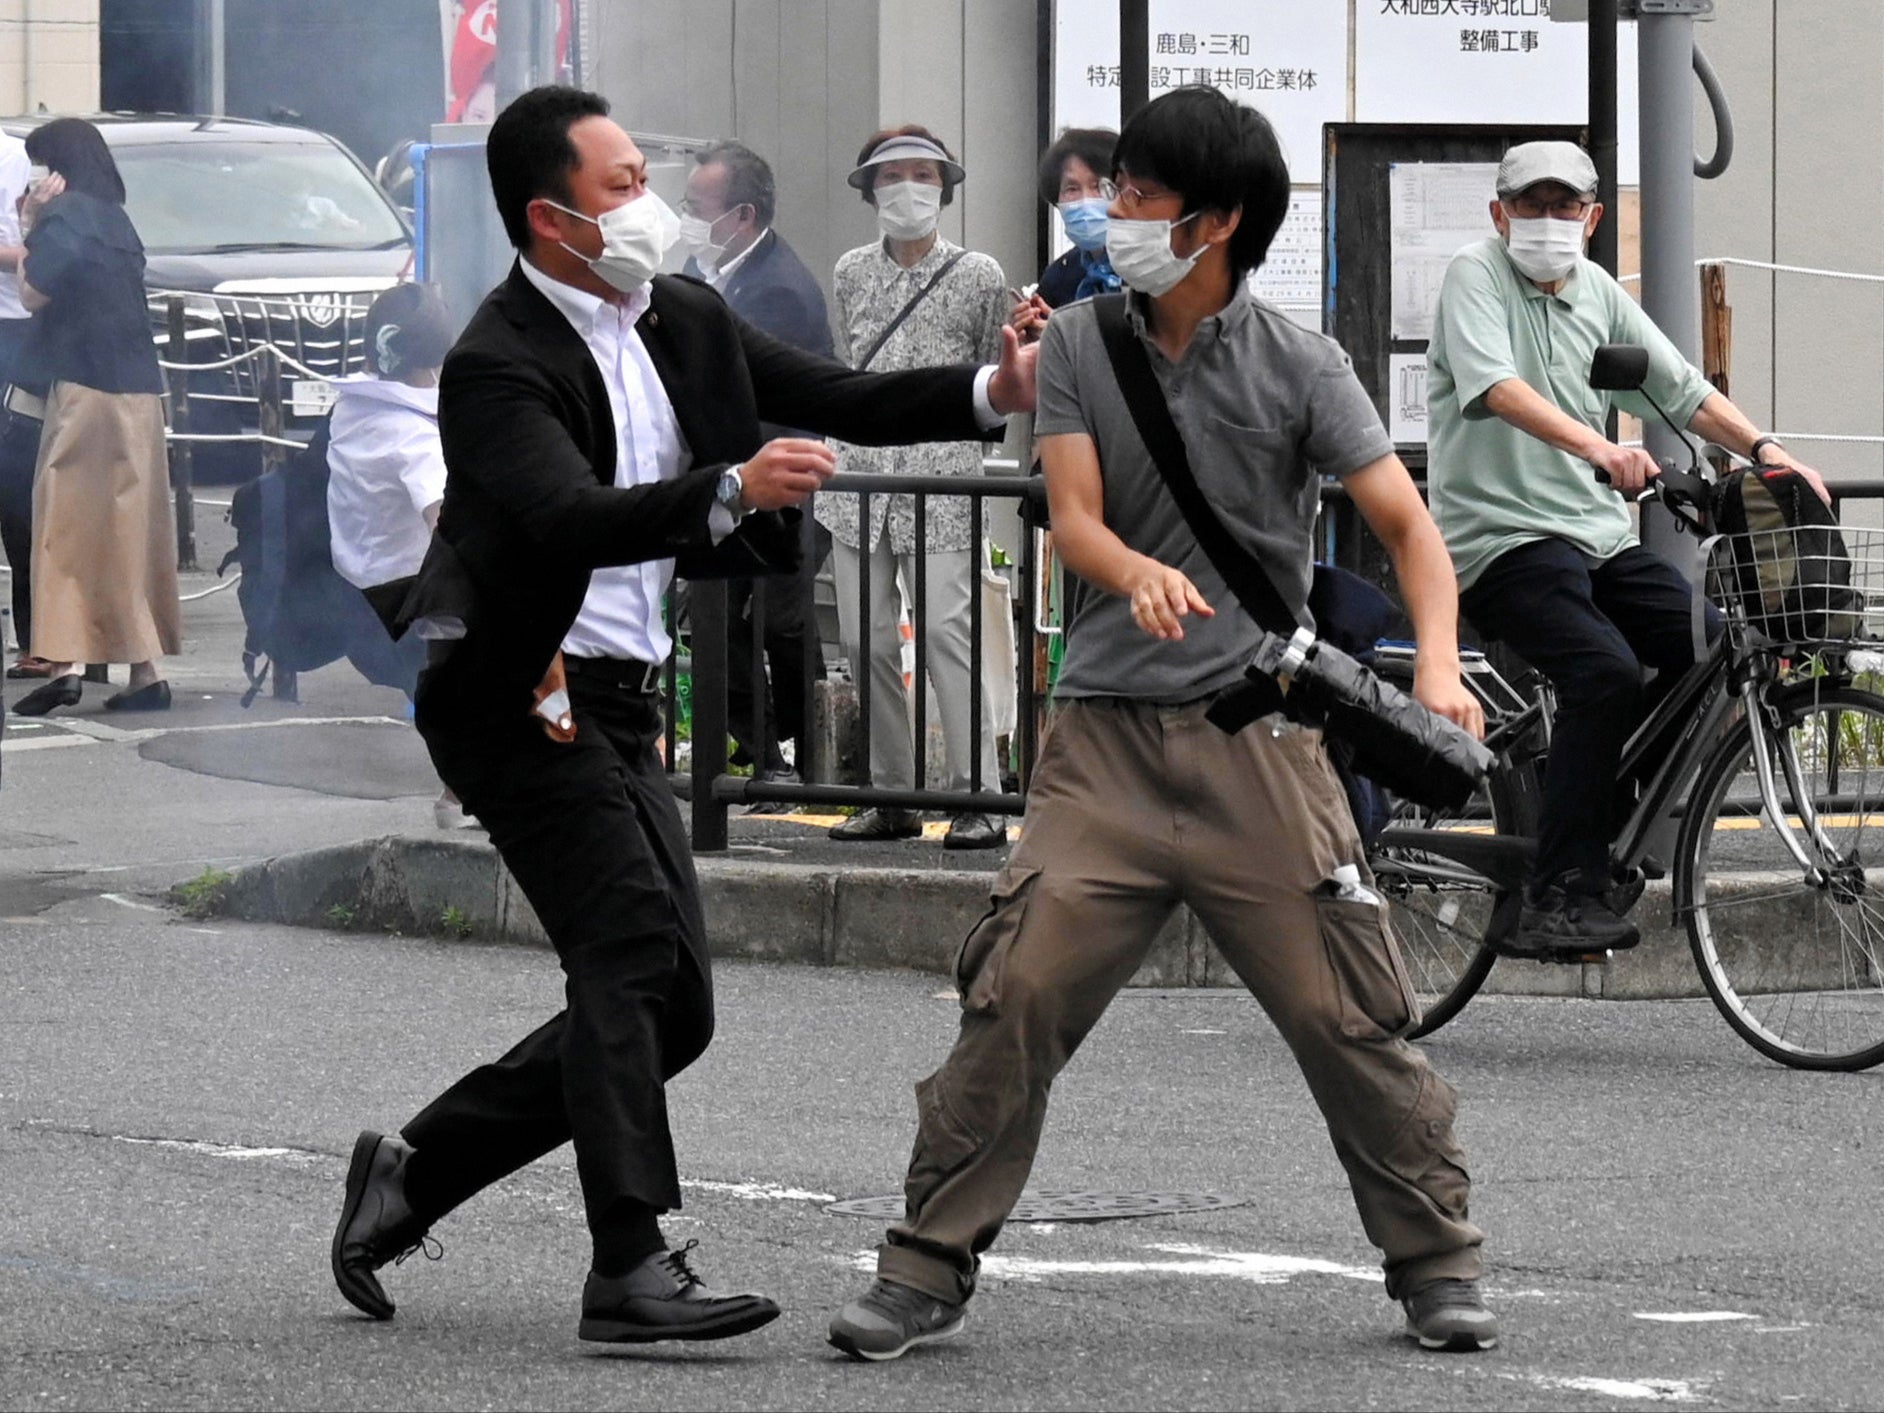 Un agente de policía detiene al sospechoso Tetsuya Yamagami frente a la estación de Yamatosaidaiji el 8 de julio en Nara, Japón